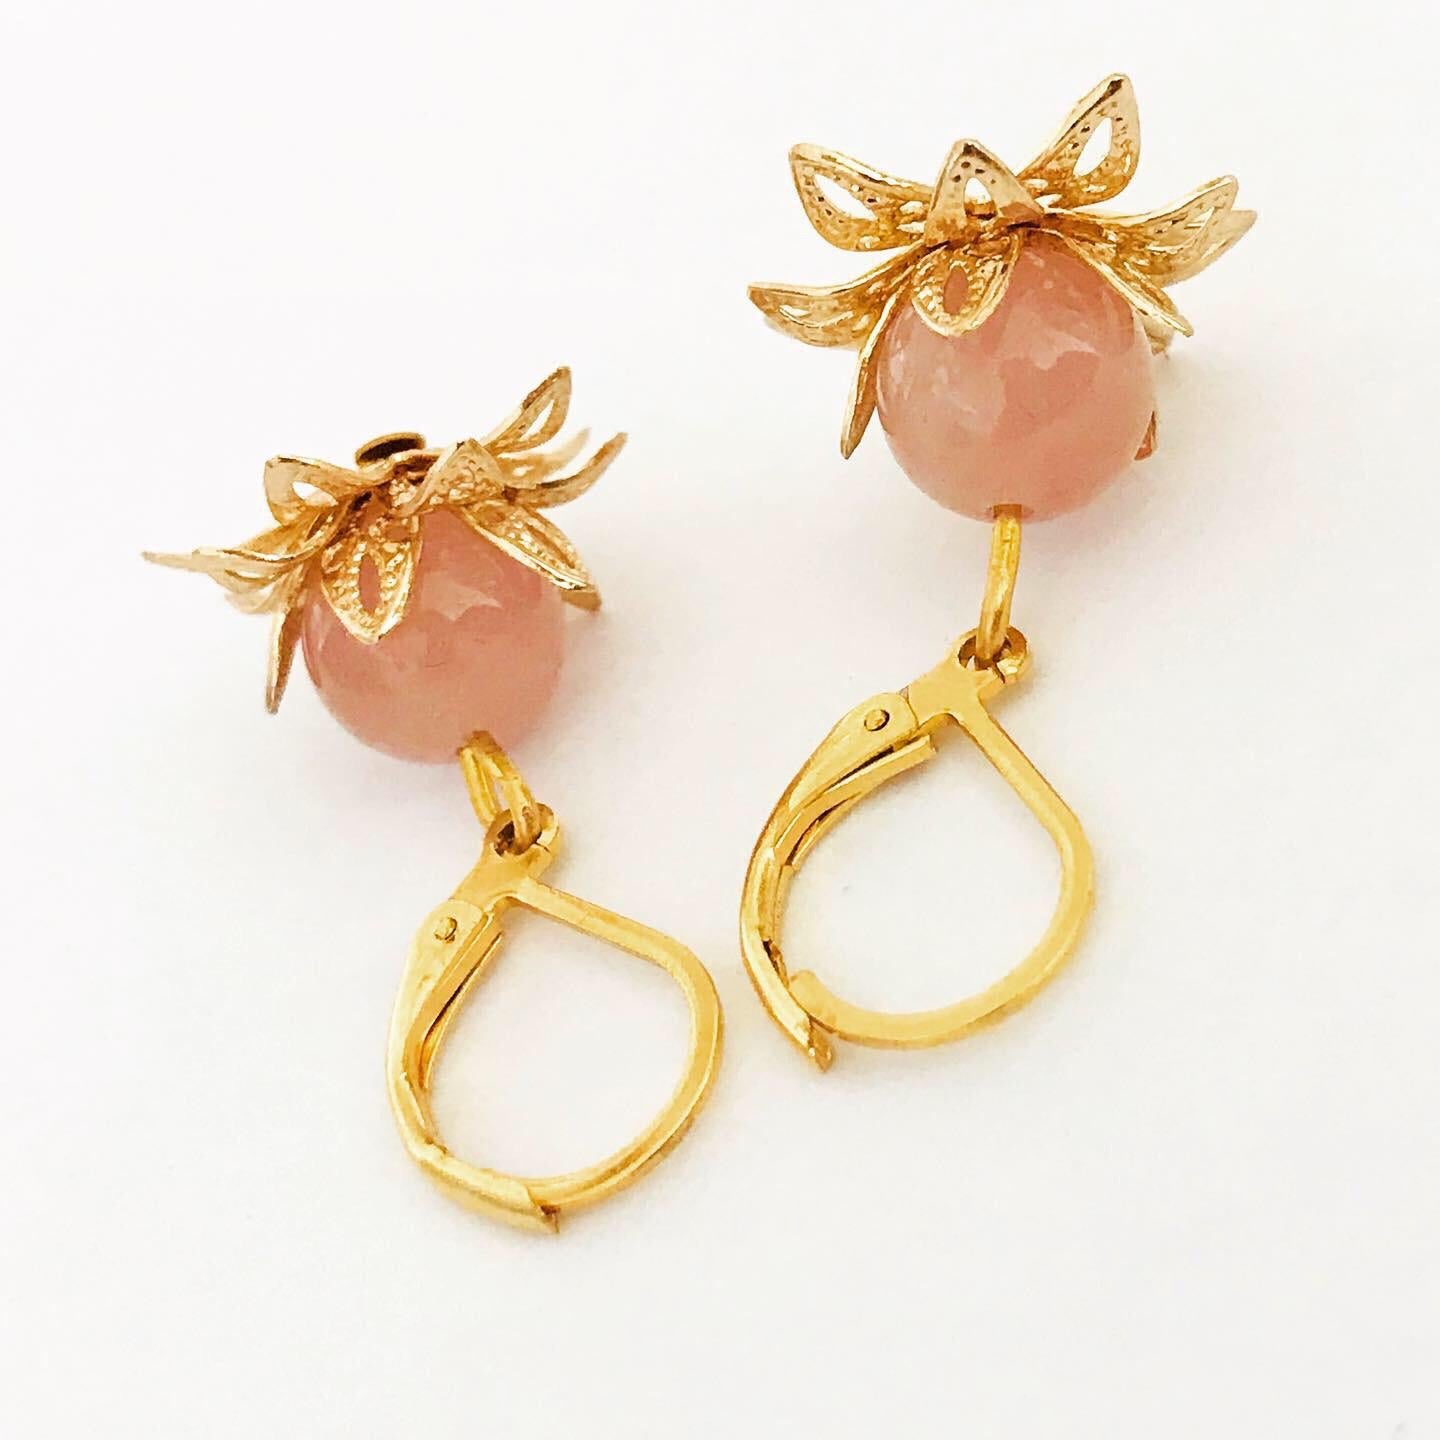 Pink Lotus Earrings